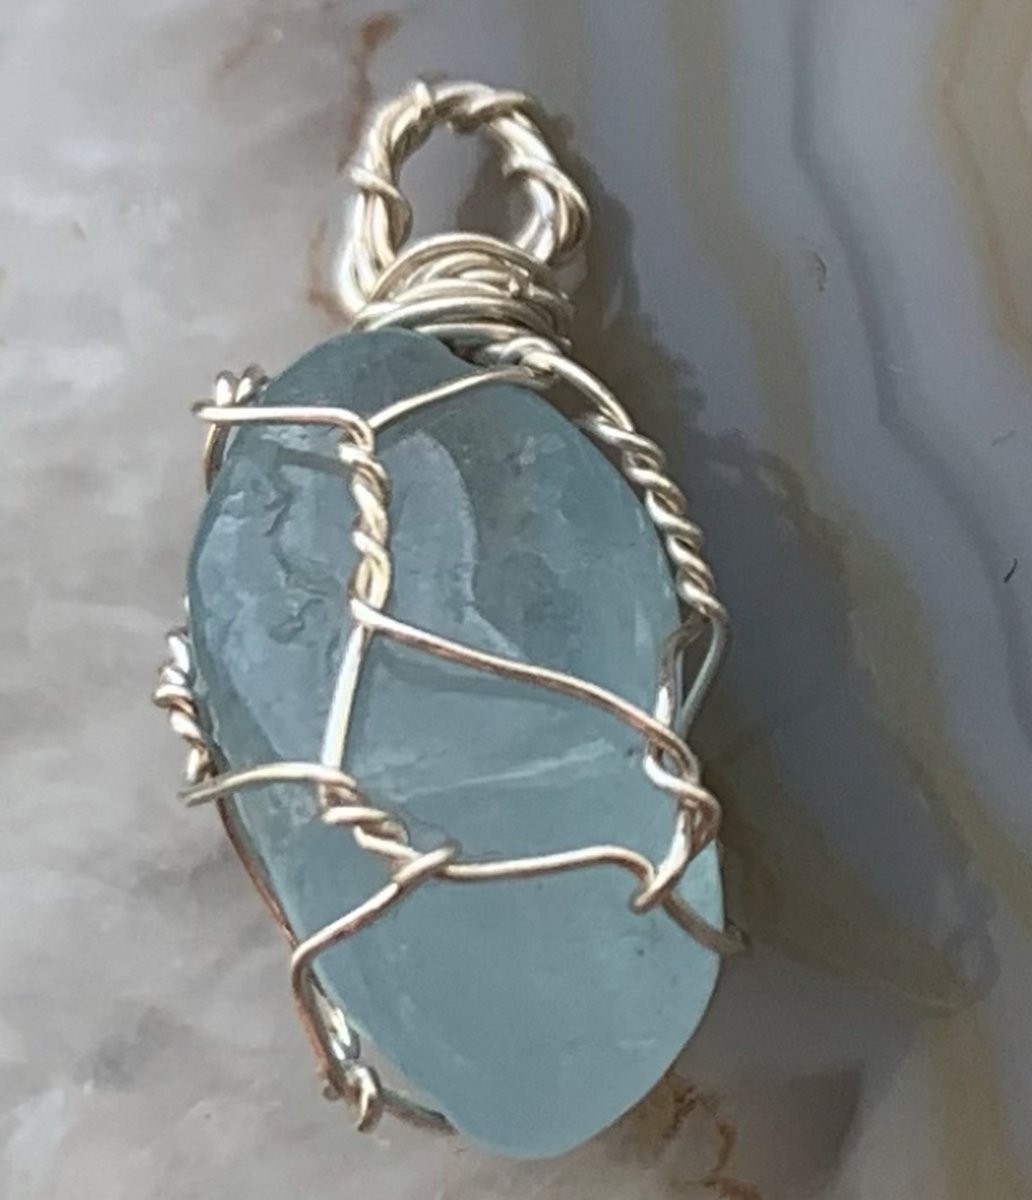 Edelsteen Hanger - Mini - Handgemaakt - Aquamarijn - Aquamarine - Zilver - Silver - Crystal necklace